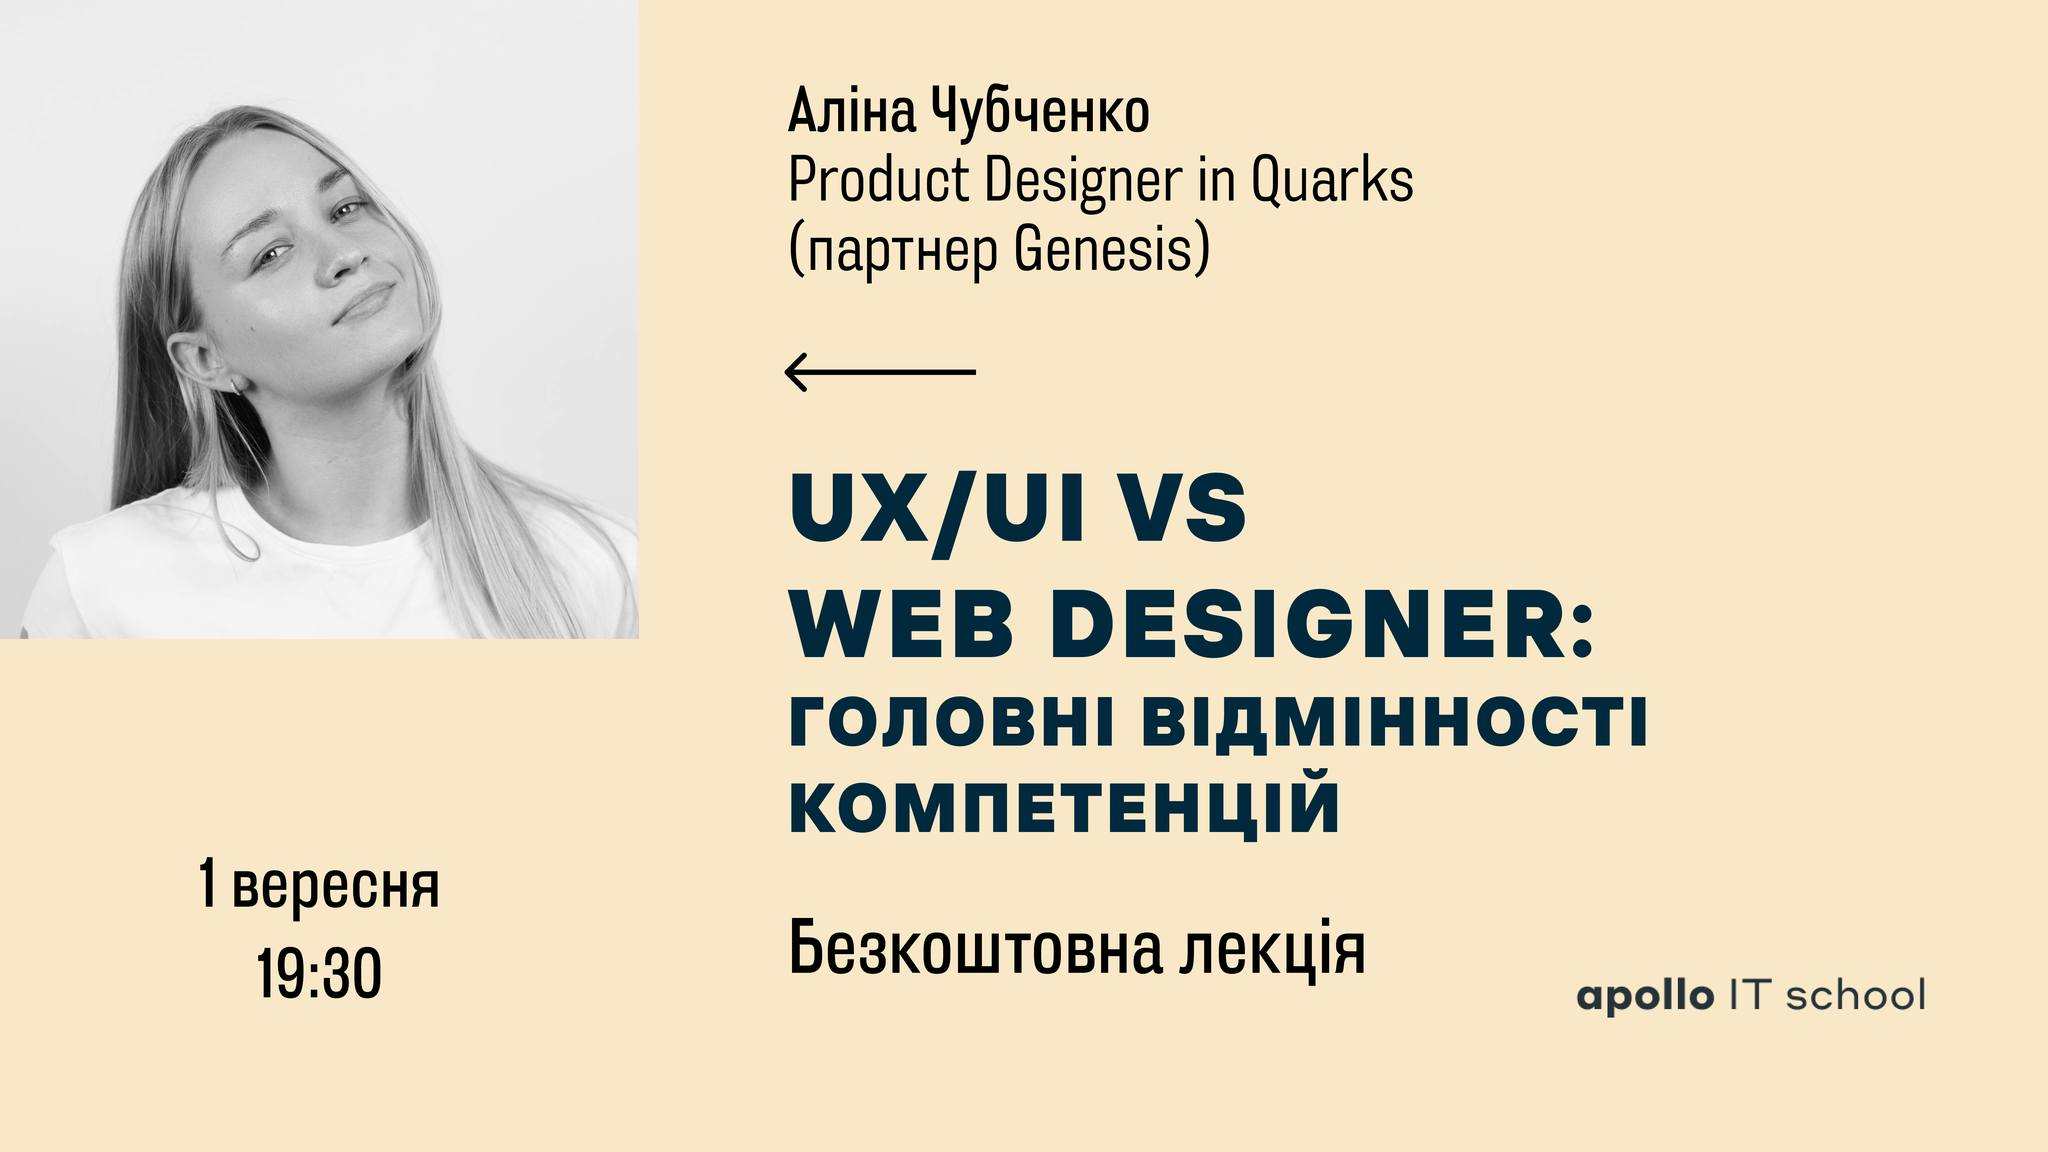 Безкоштовна лекція «UX/UI vs Web Designer: головні відмінності компетенцій»